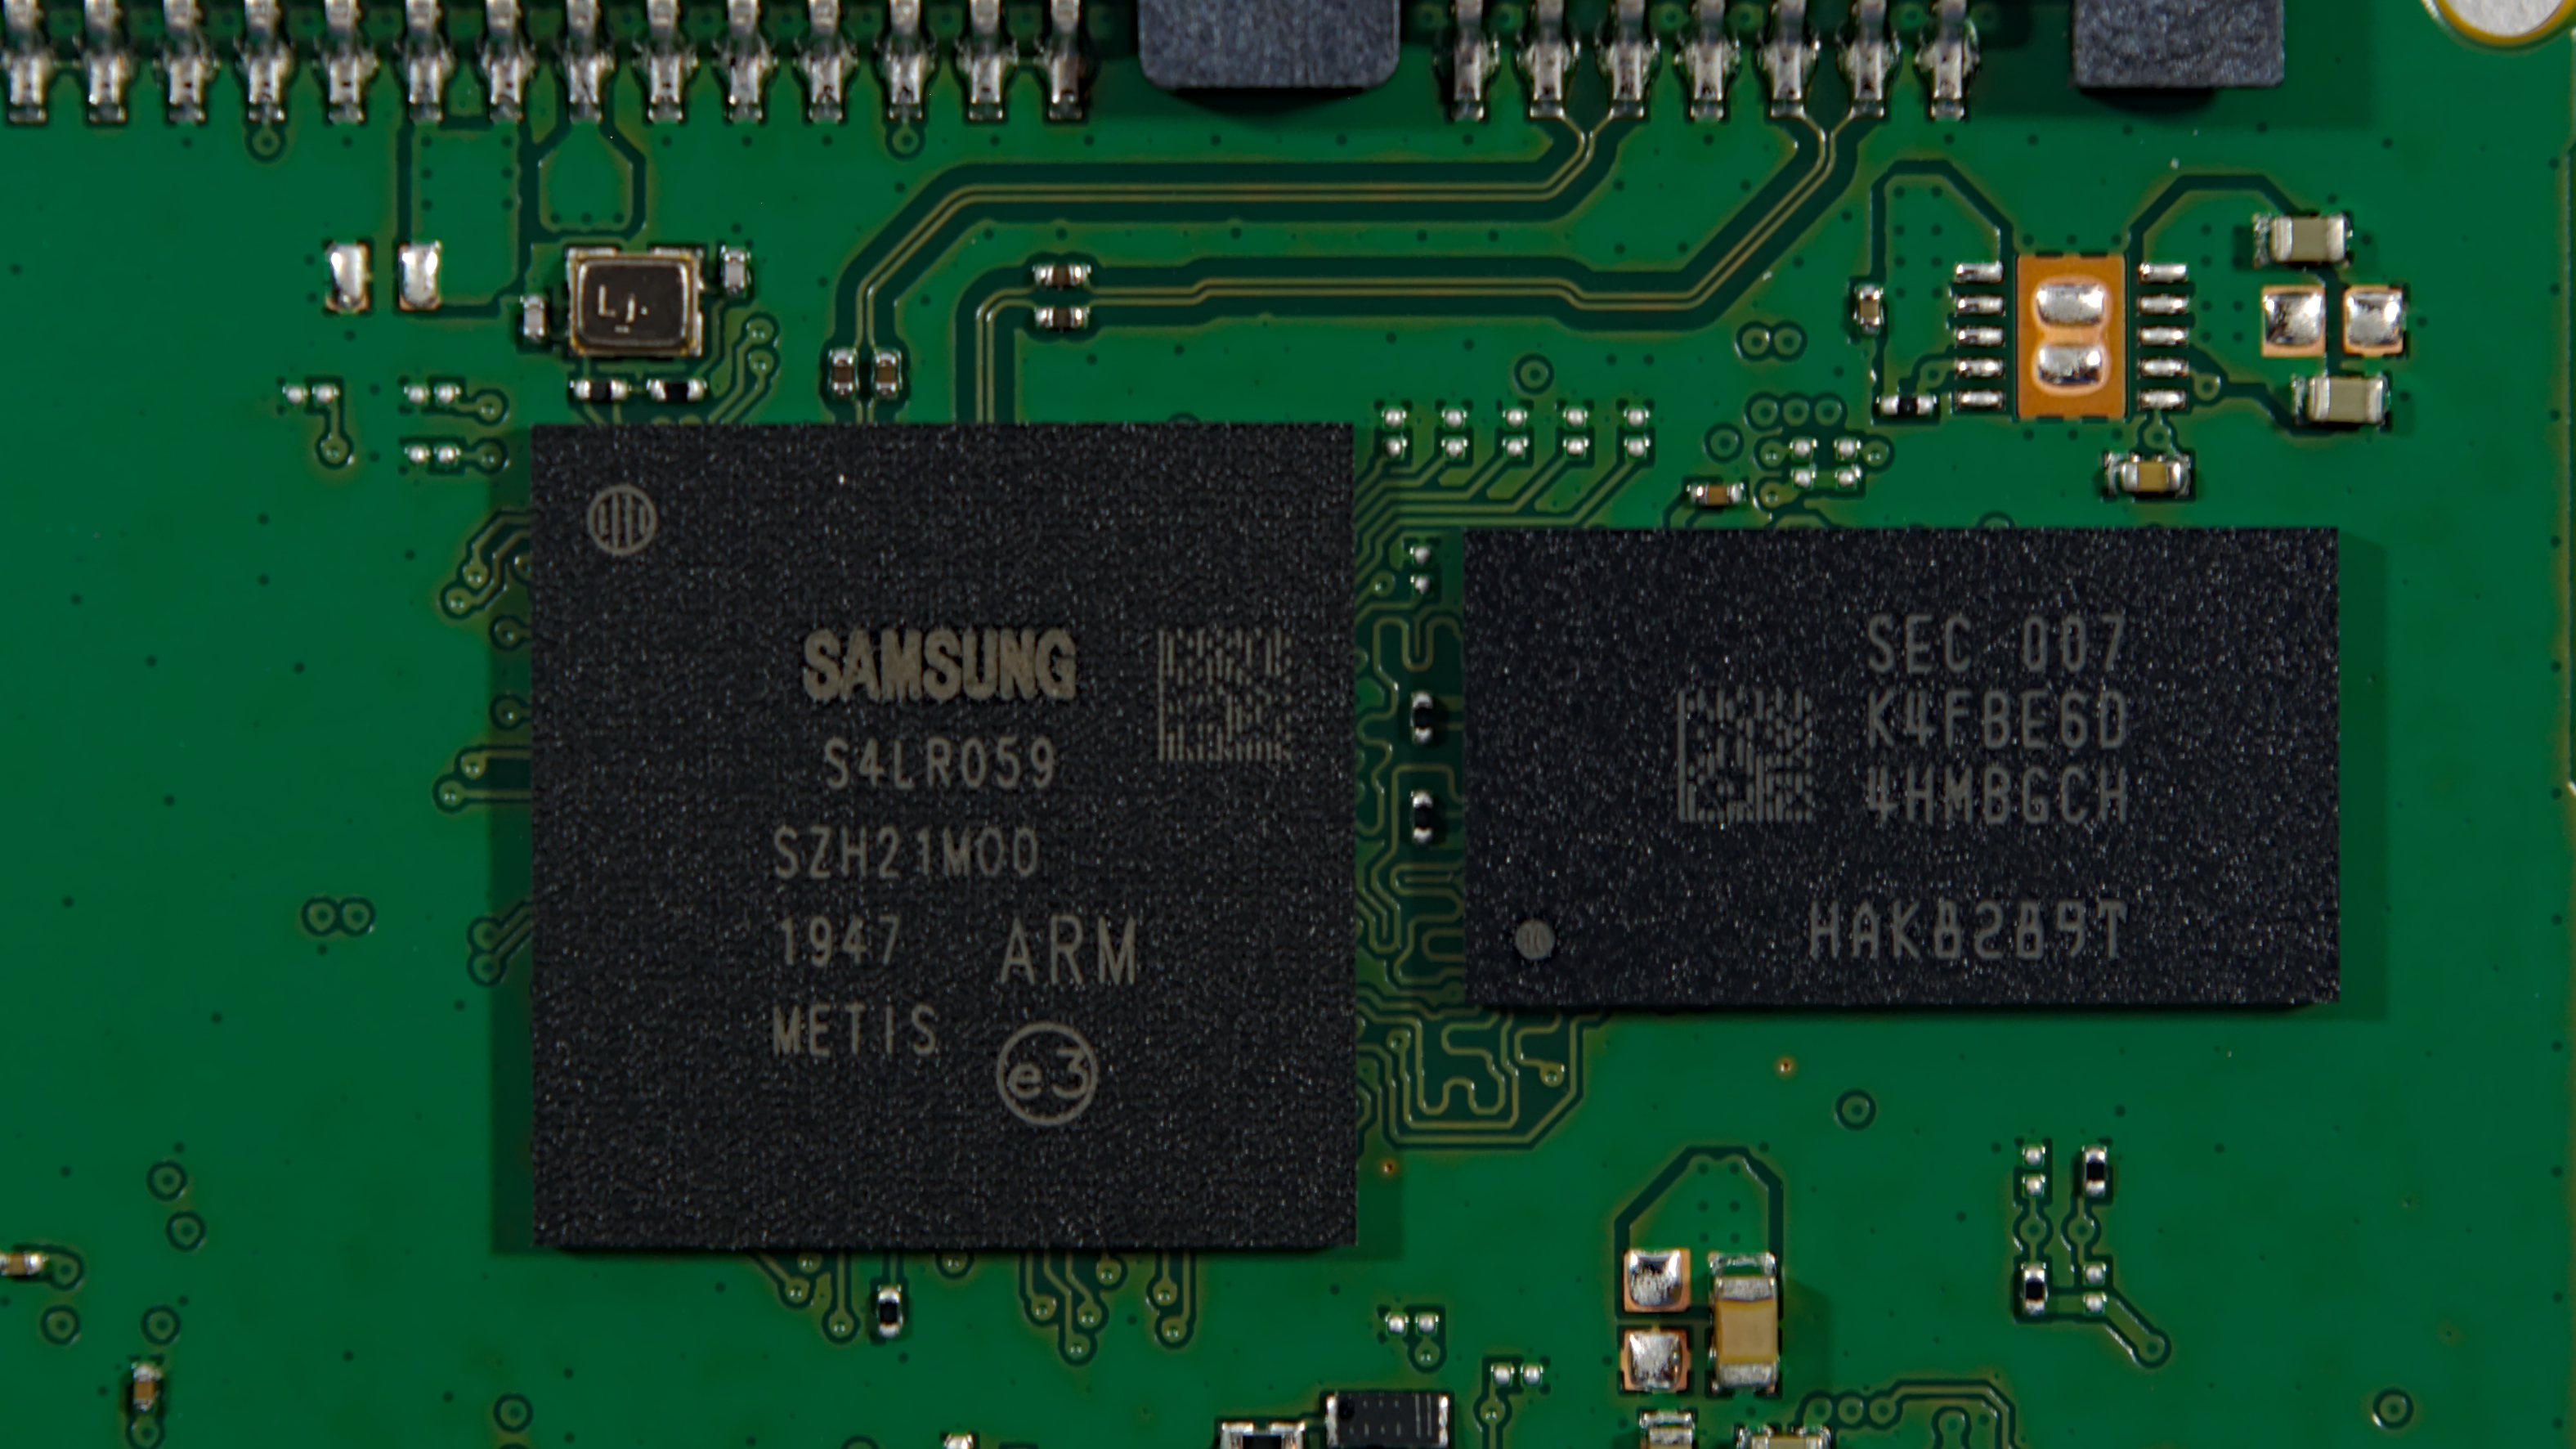 SSD Hard Drive: Samsung 870 QVO 2.5'' 1TB SSD, SATA III, 560 Read